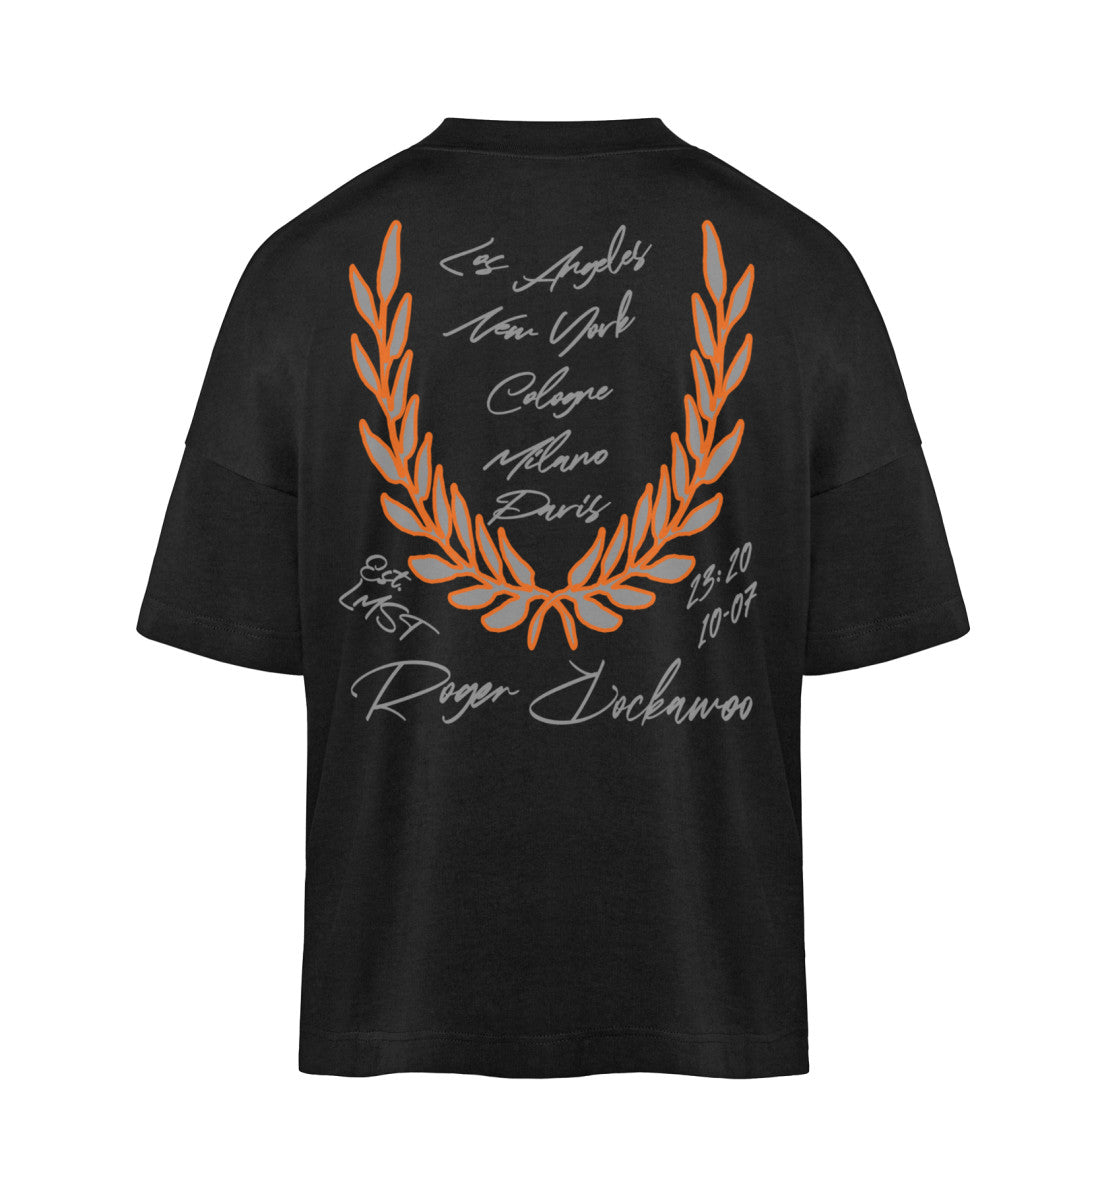 Schwarzes T-Shirt Damen Herren Unisex mit Print Design der Basketball Downtown Kollektion von Roger Rockawoo Clothing